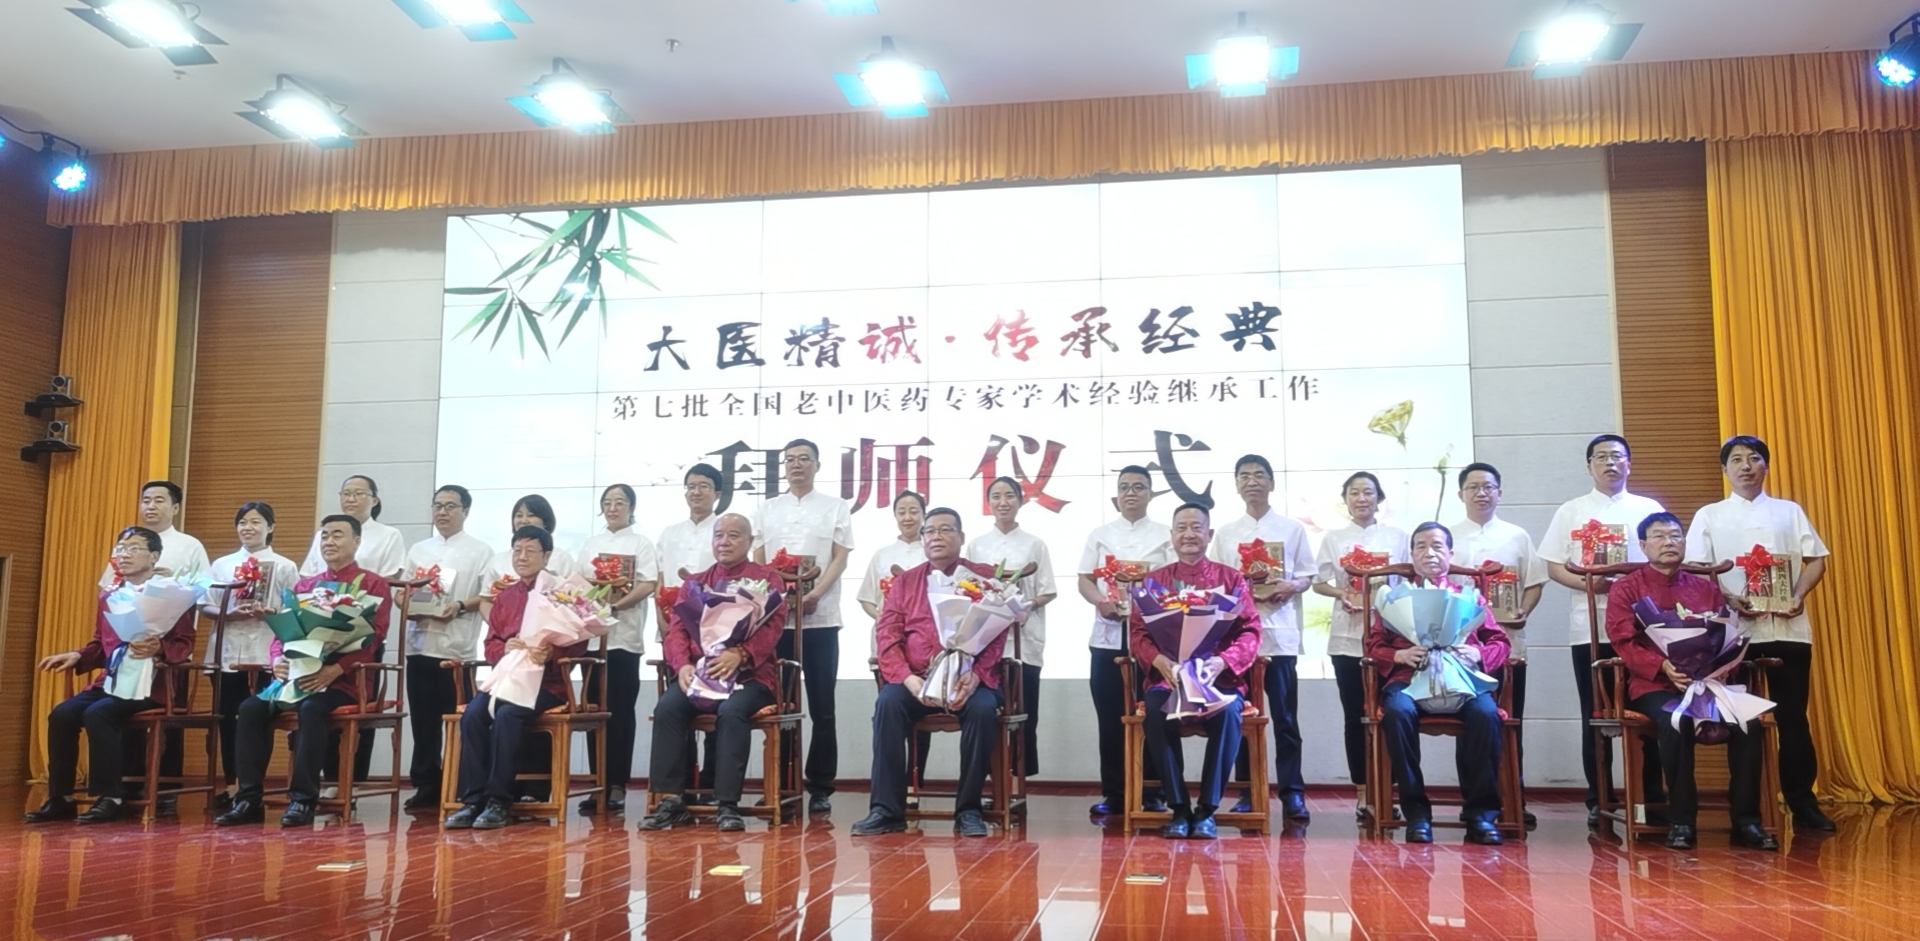 第七批全国老中医药专家学术经验继承工作在宁夏启动